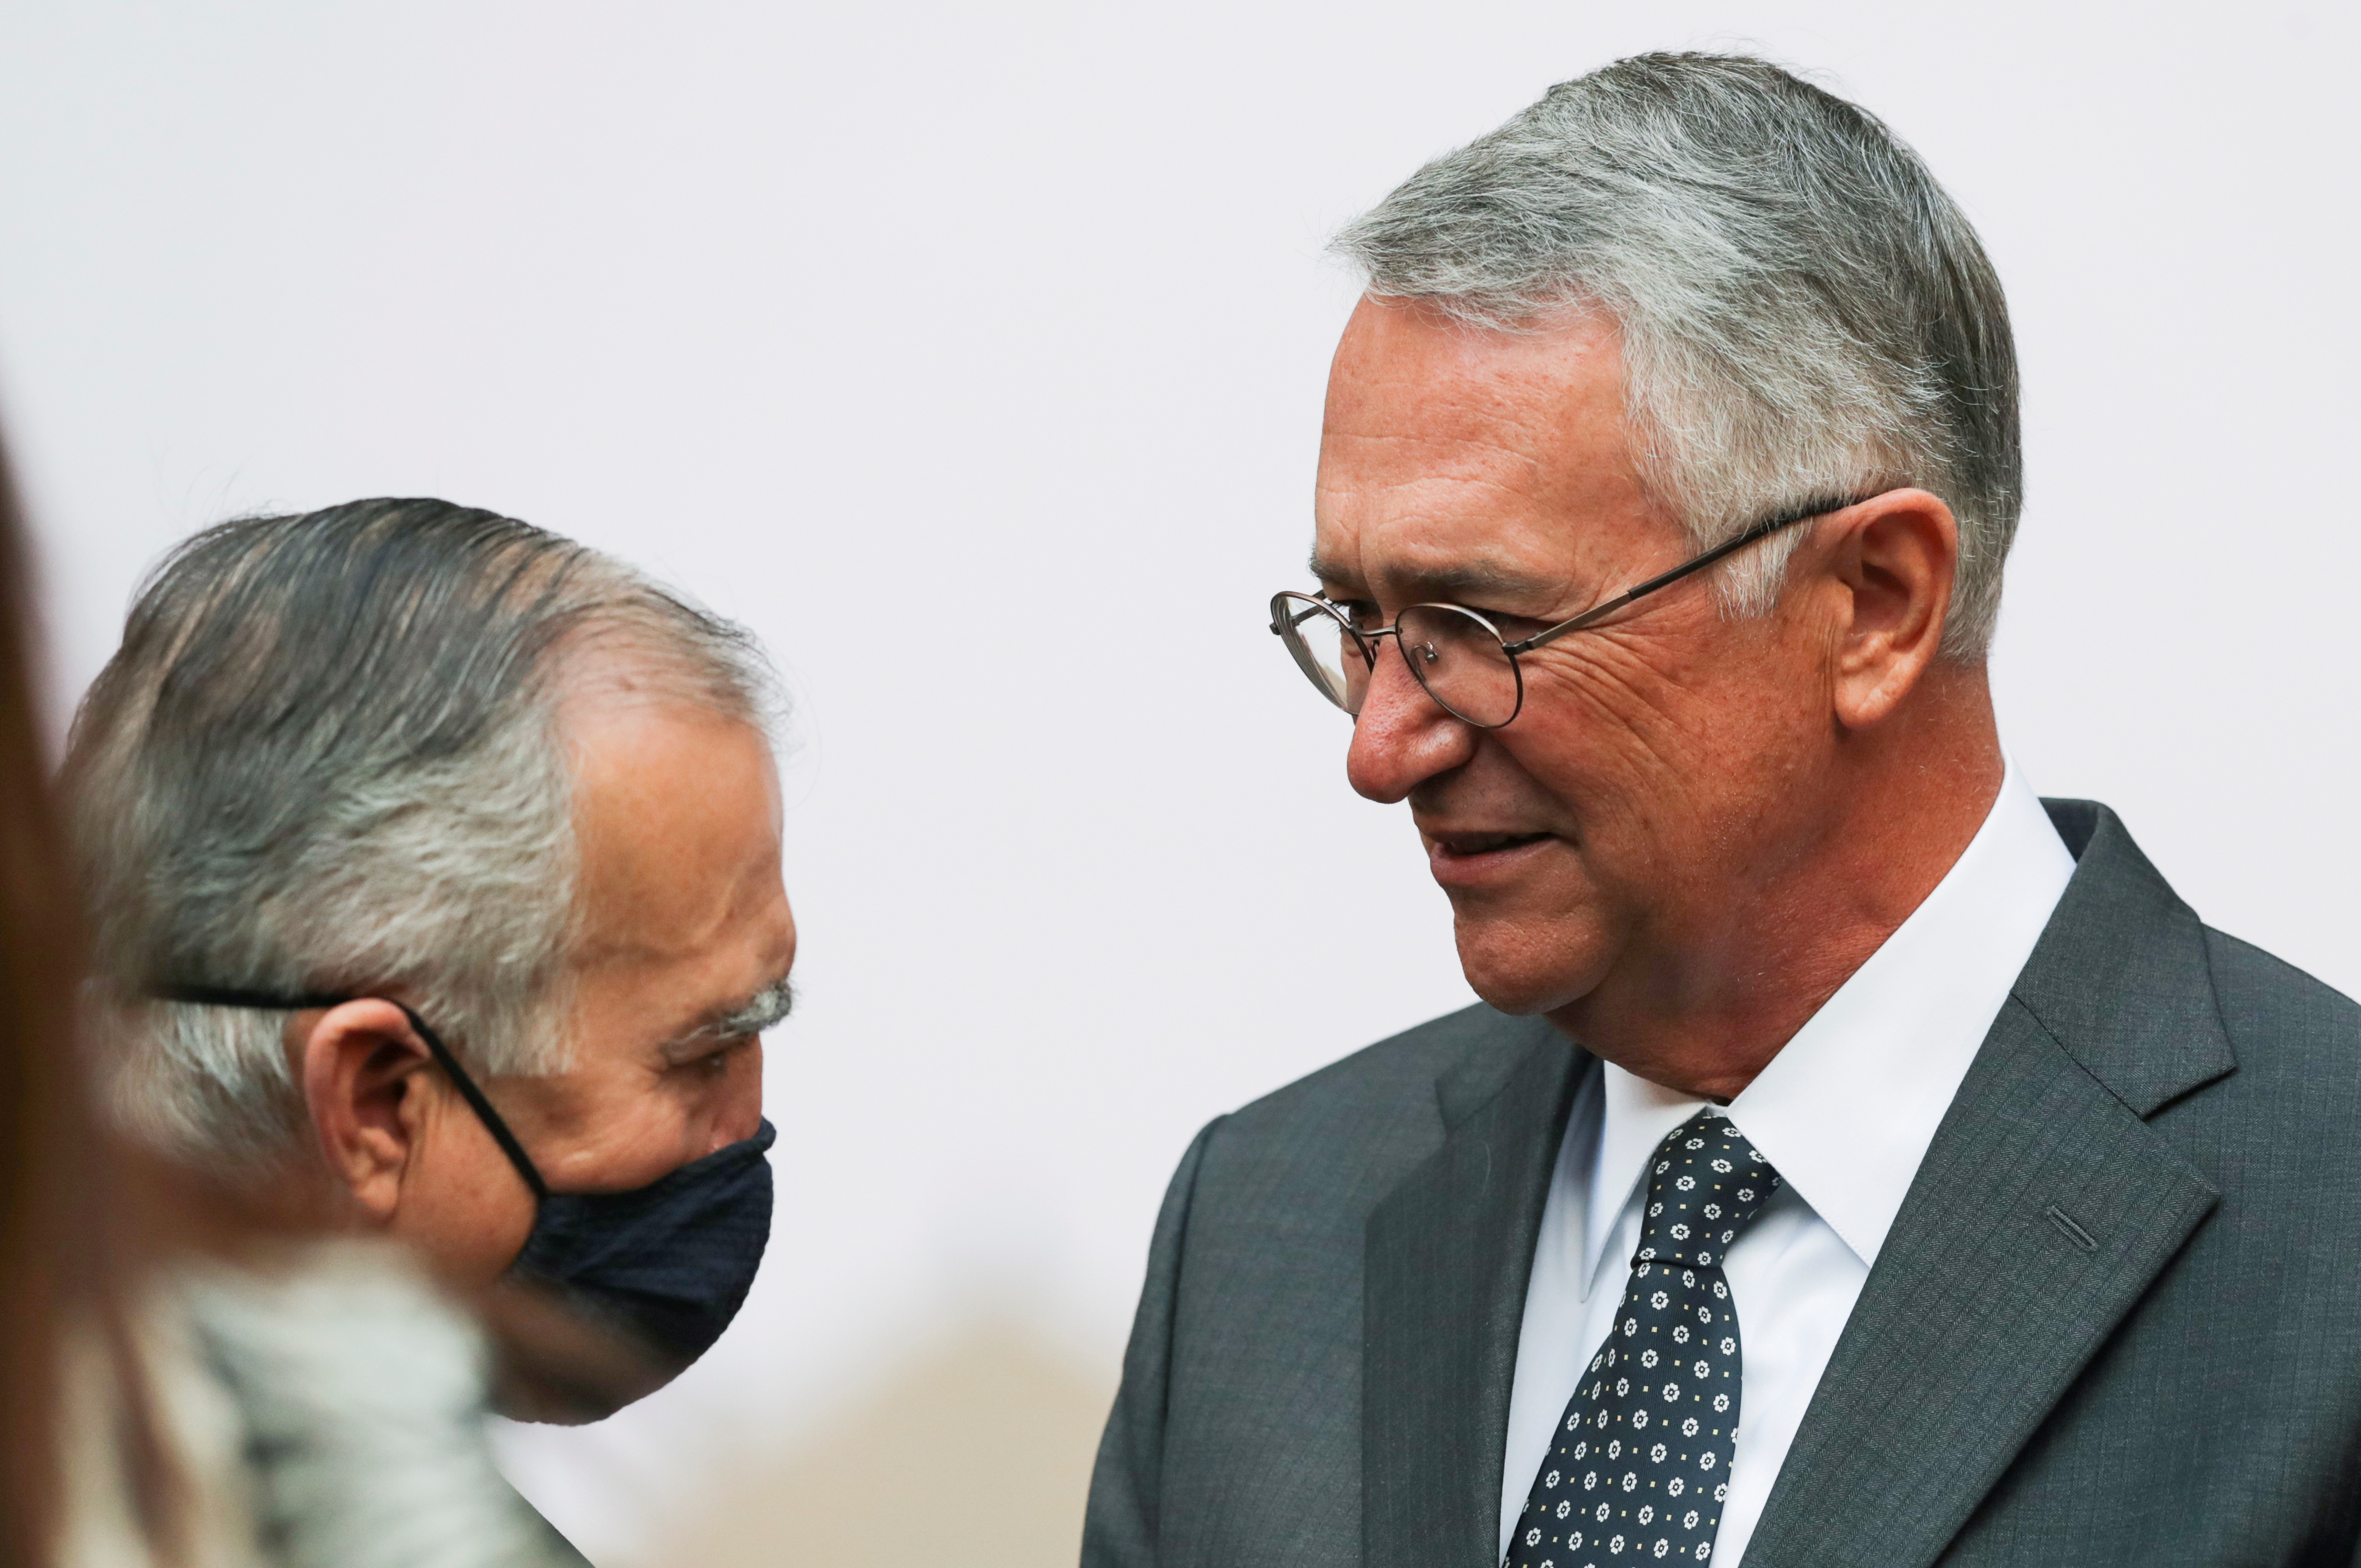 El manejo de Alfonso Romo al interior del gabinete ha sido polémico e incluso ha recibido duras críticas (Foto: Reuters / Henry Romero)

